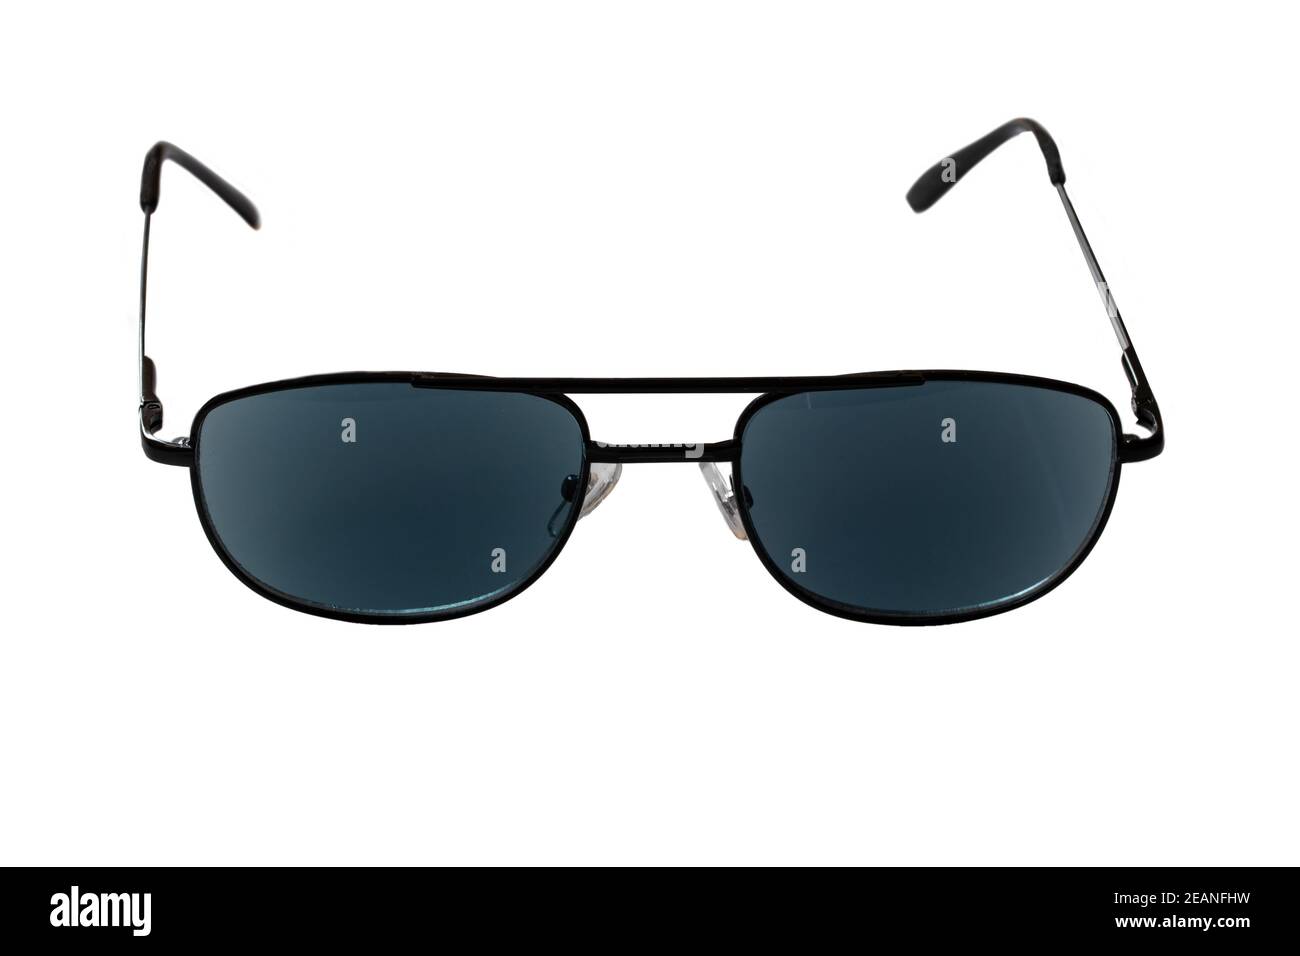 Stylish sunglasses on black background Stock Photo - Alamy